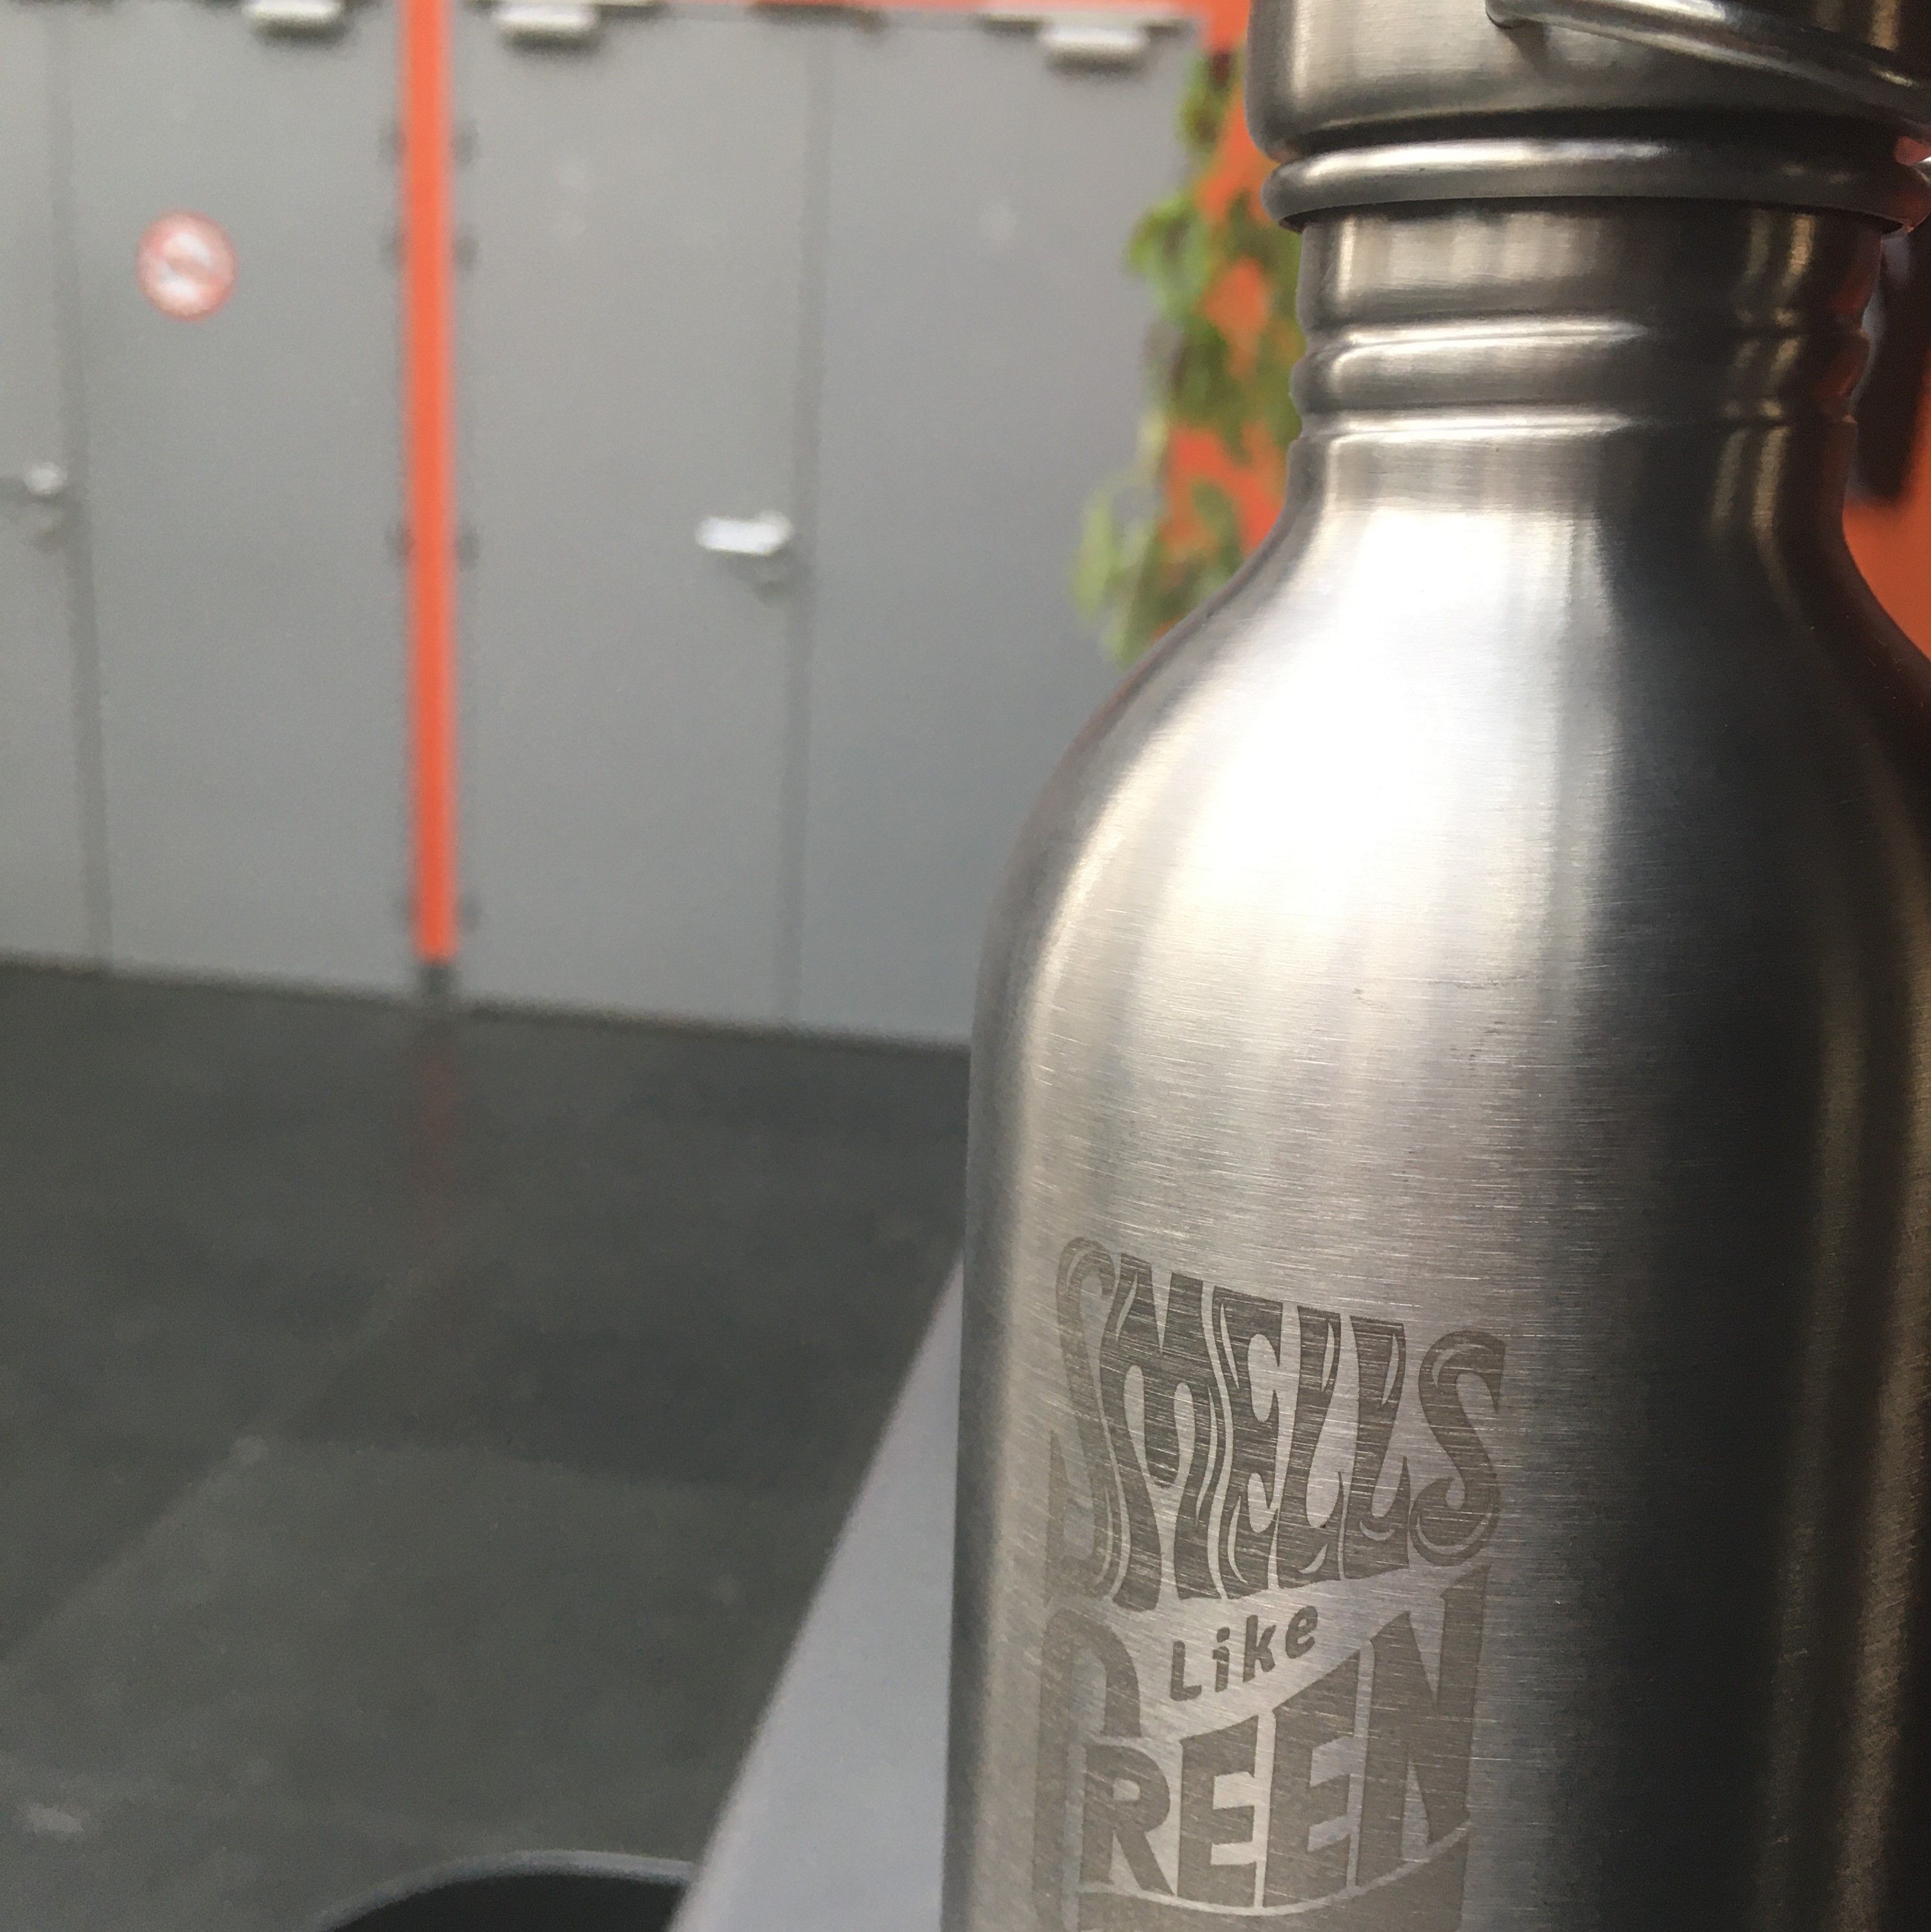 Pour limiter l'usage des bouteilles en plastique, nous proposons aux artistes de boire dans nos superbes gourdes "Smells like green spirit" ! © DR